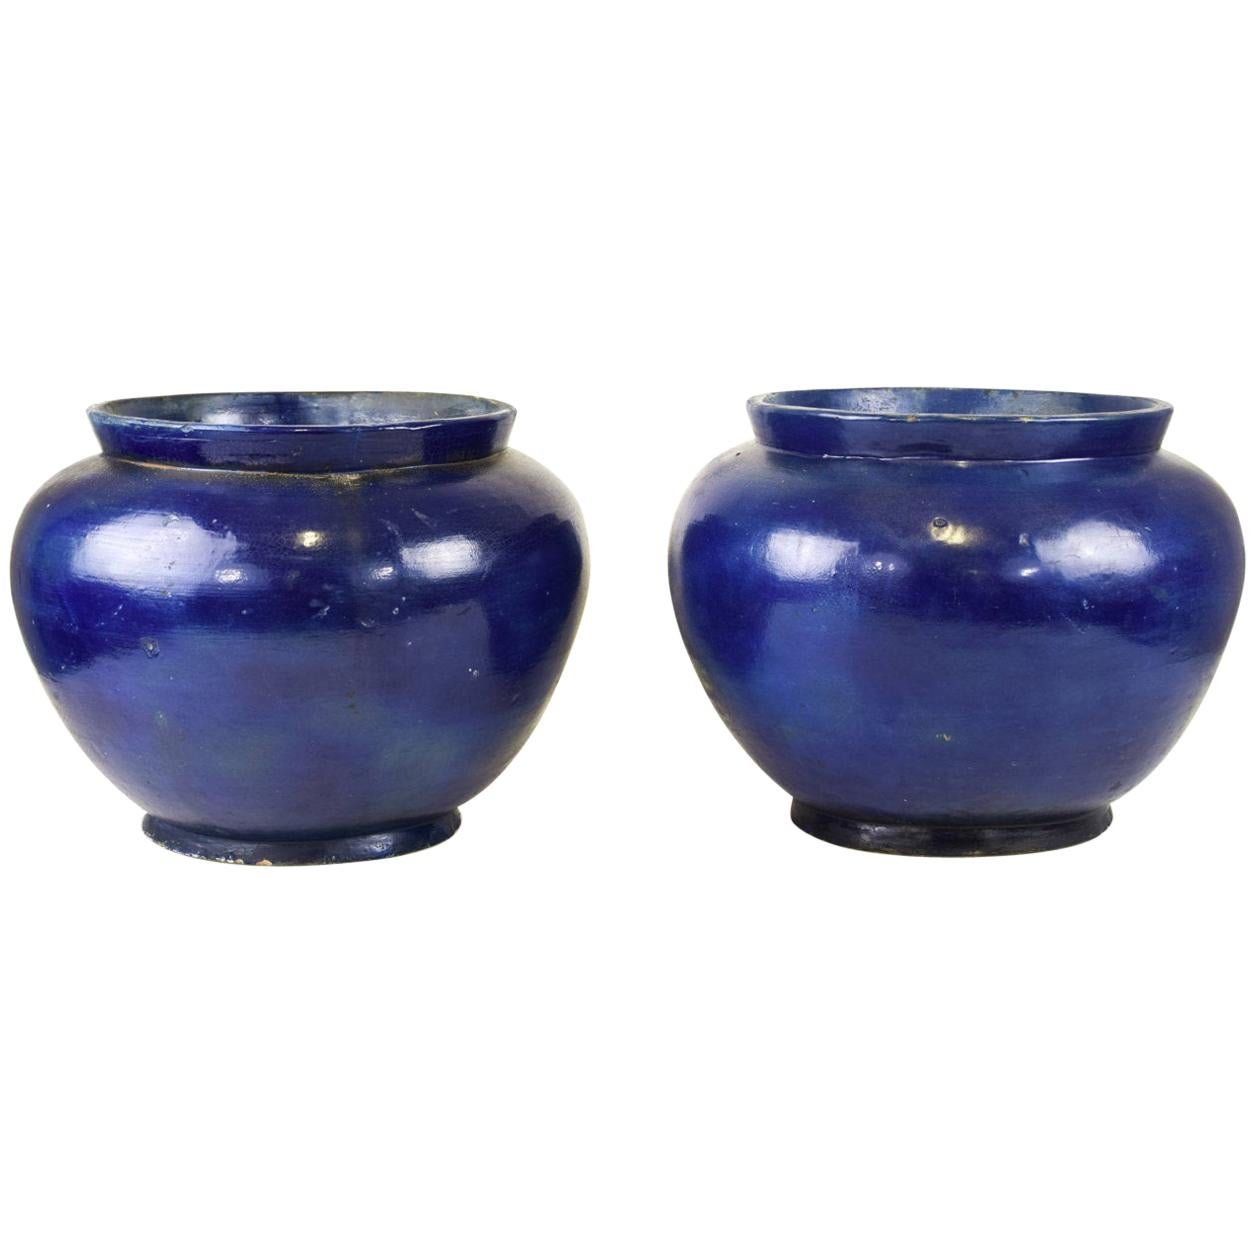 Paire de vases anciens en terre cuite bleue:: de fabrication orientale:: 19e siècle